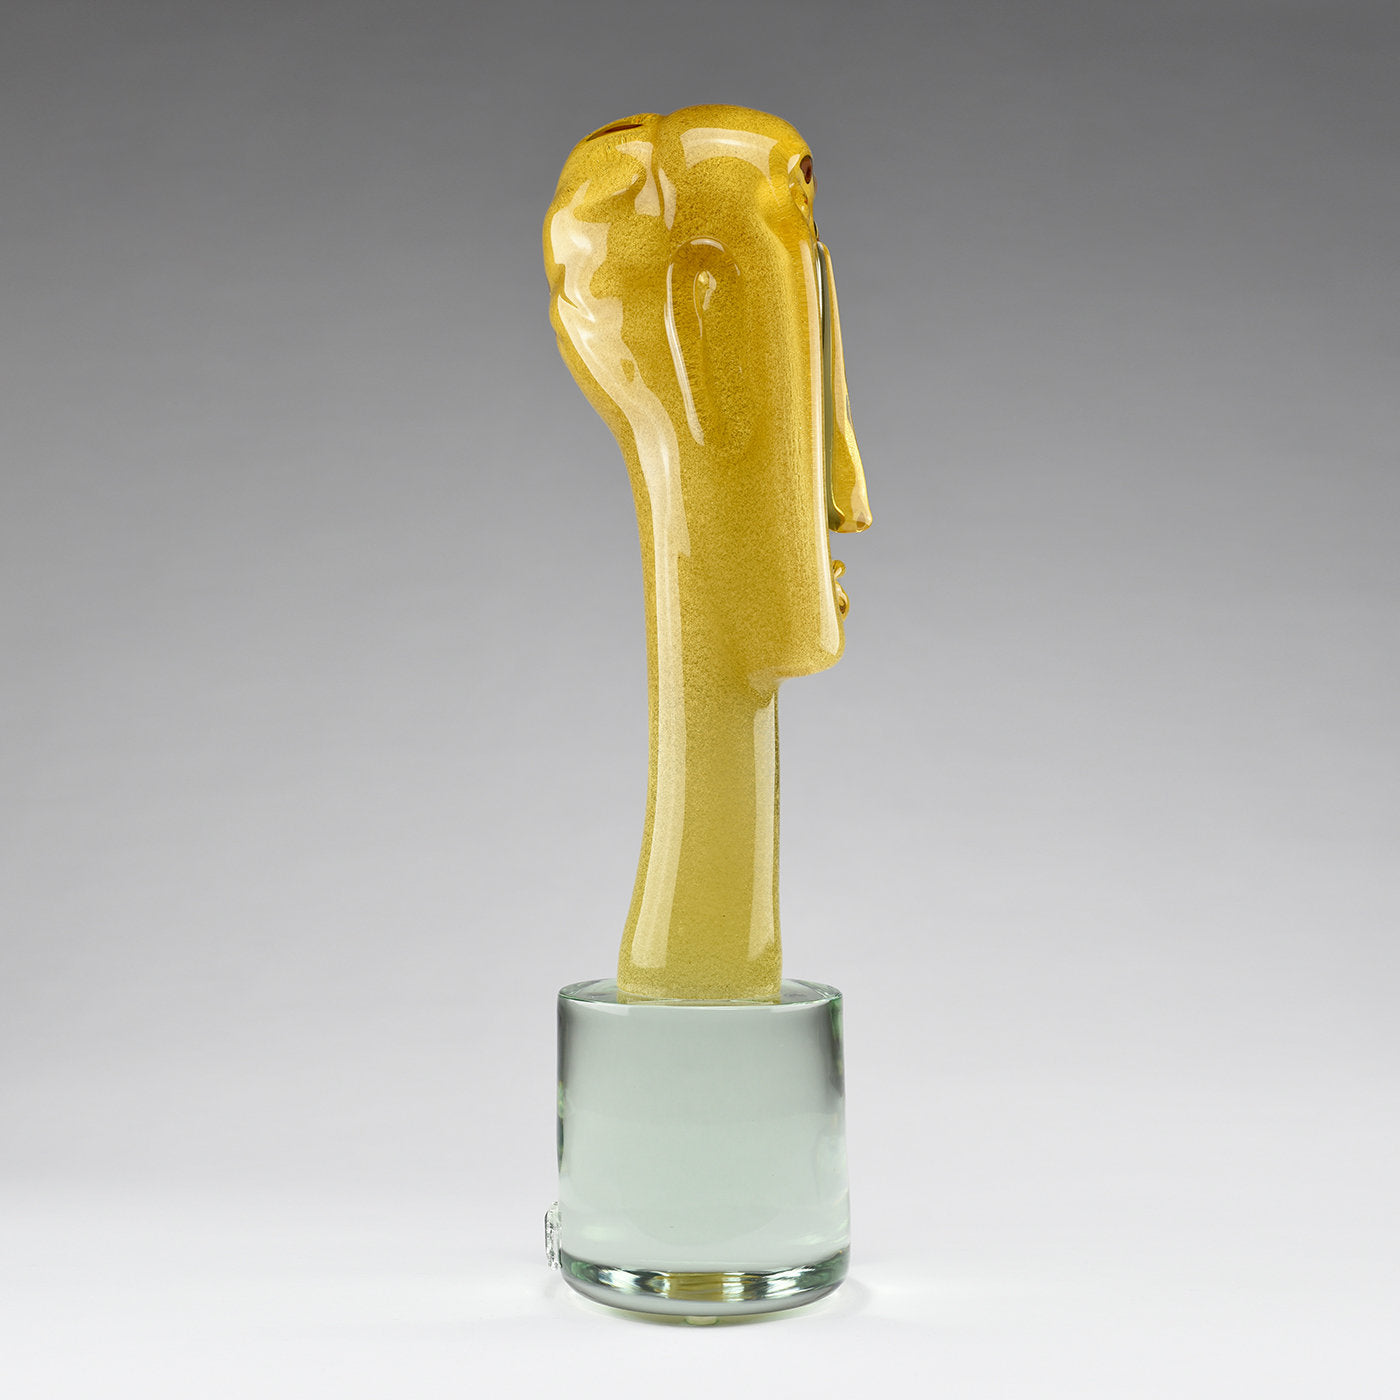 Volto Squadrato Amber Glass Sculpture - Alternative view 2